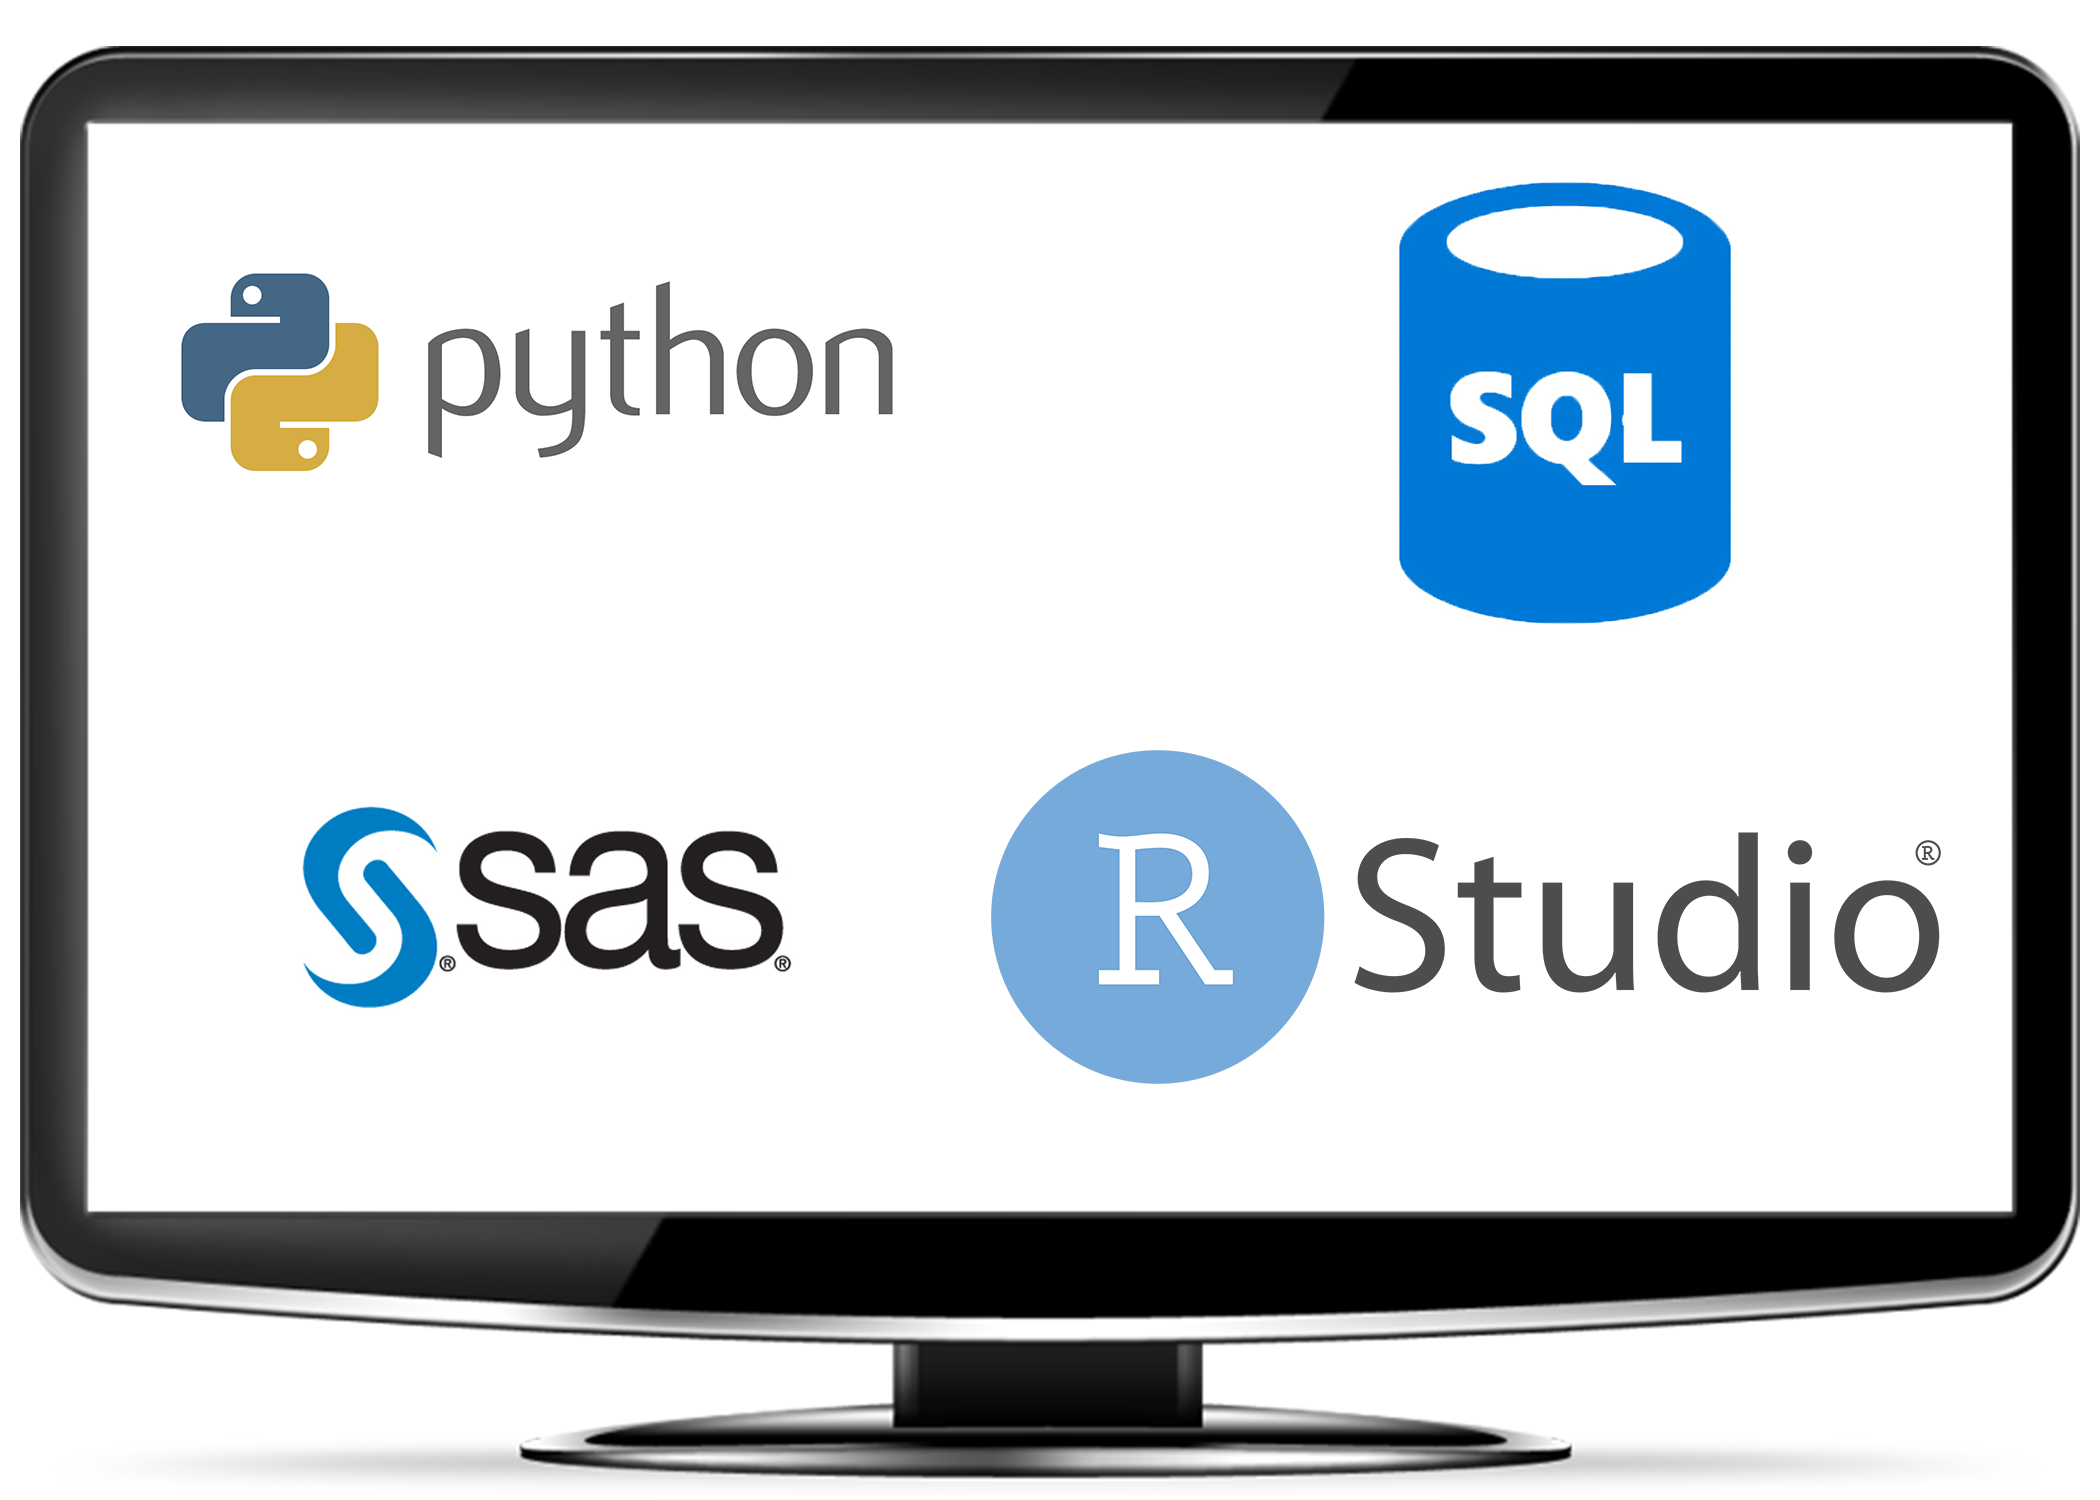 Logos of computing software companies like Python, R studio, SQL, SAS